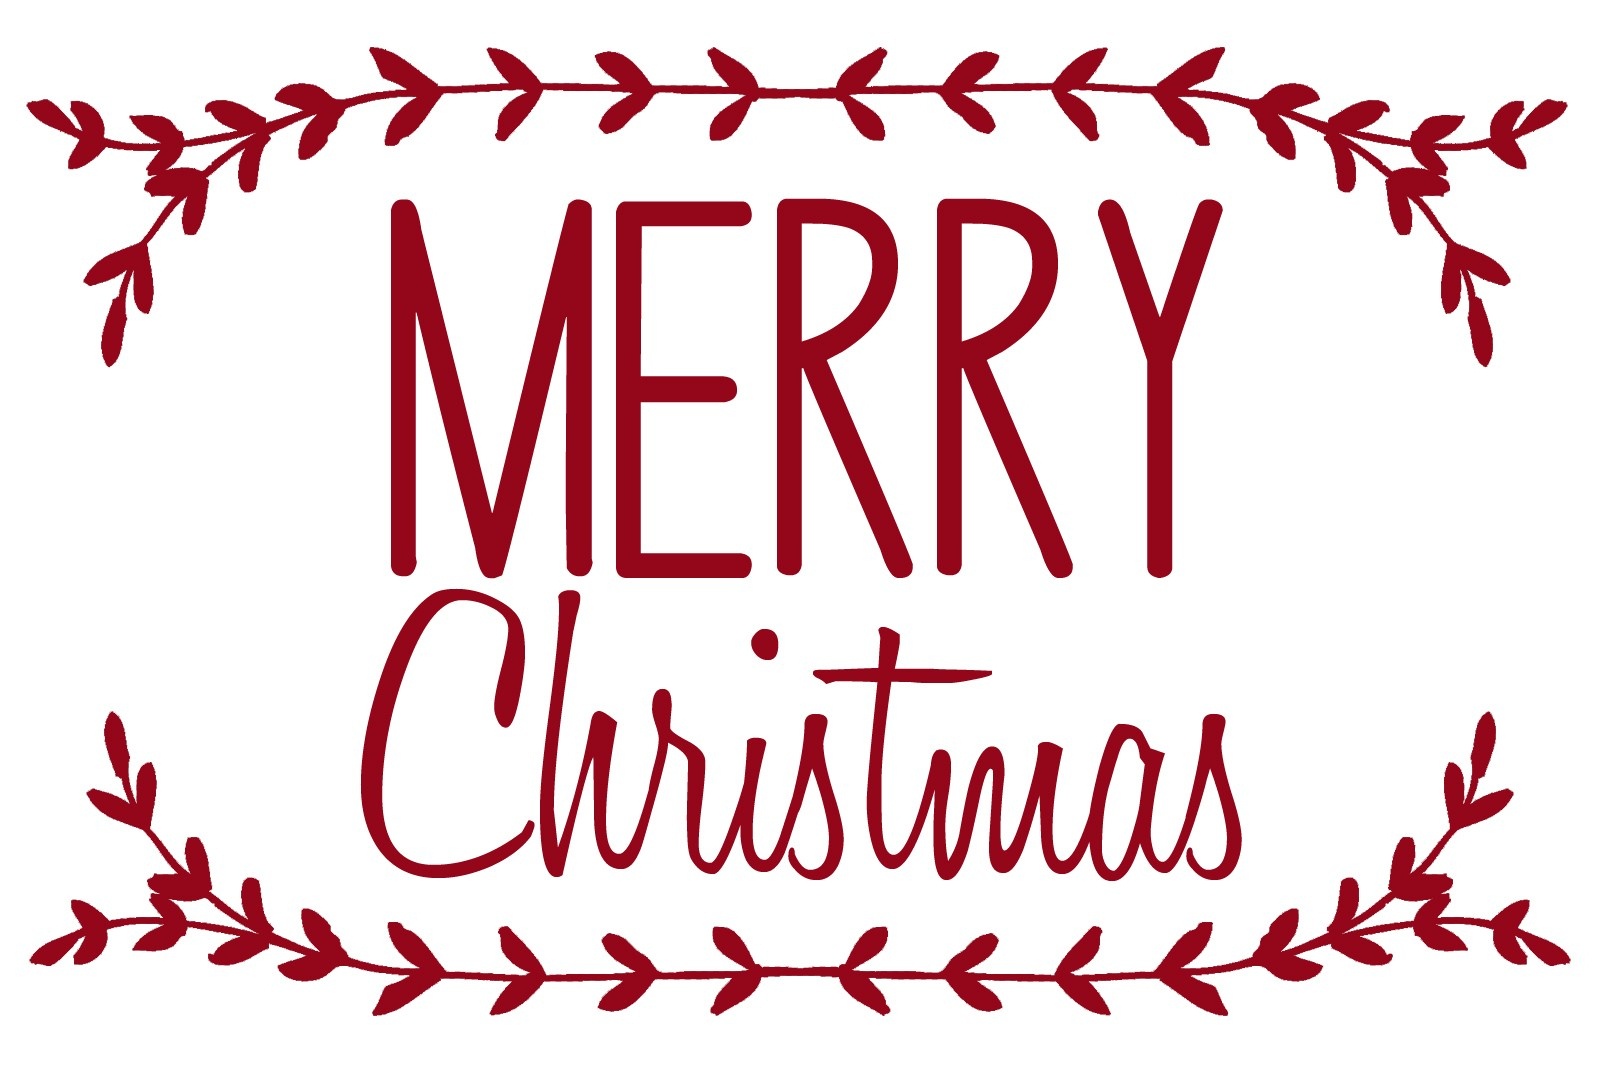 Merrychristmas 16 Christmas Printable Stencils | Xorforums - Merry Christmas Stencil Free Printable